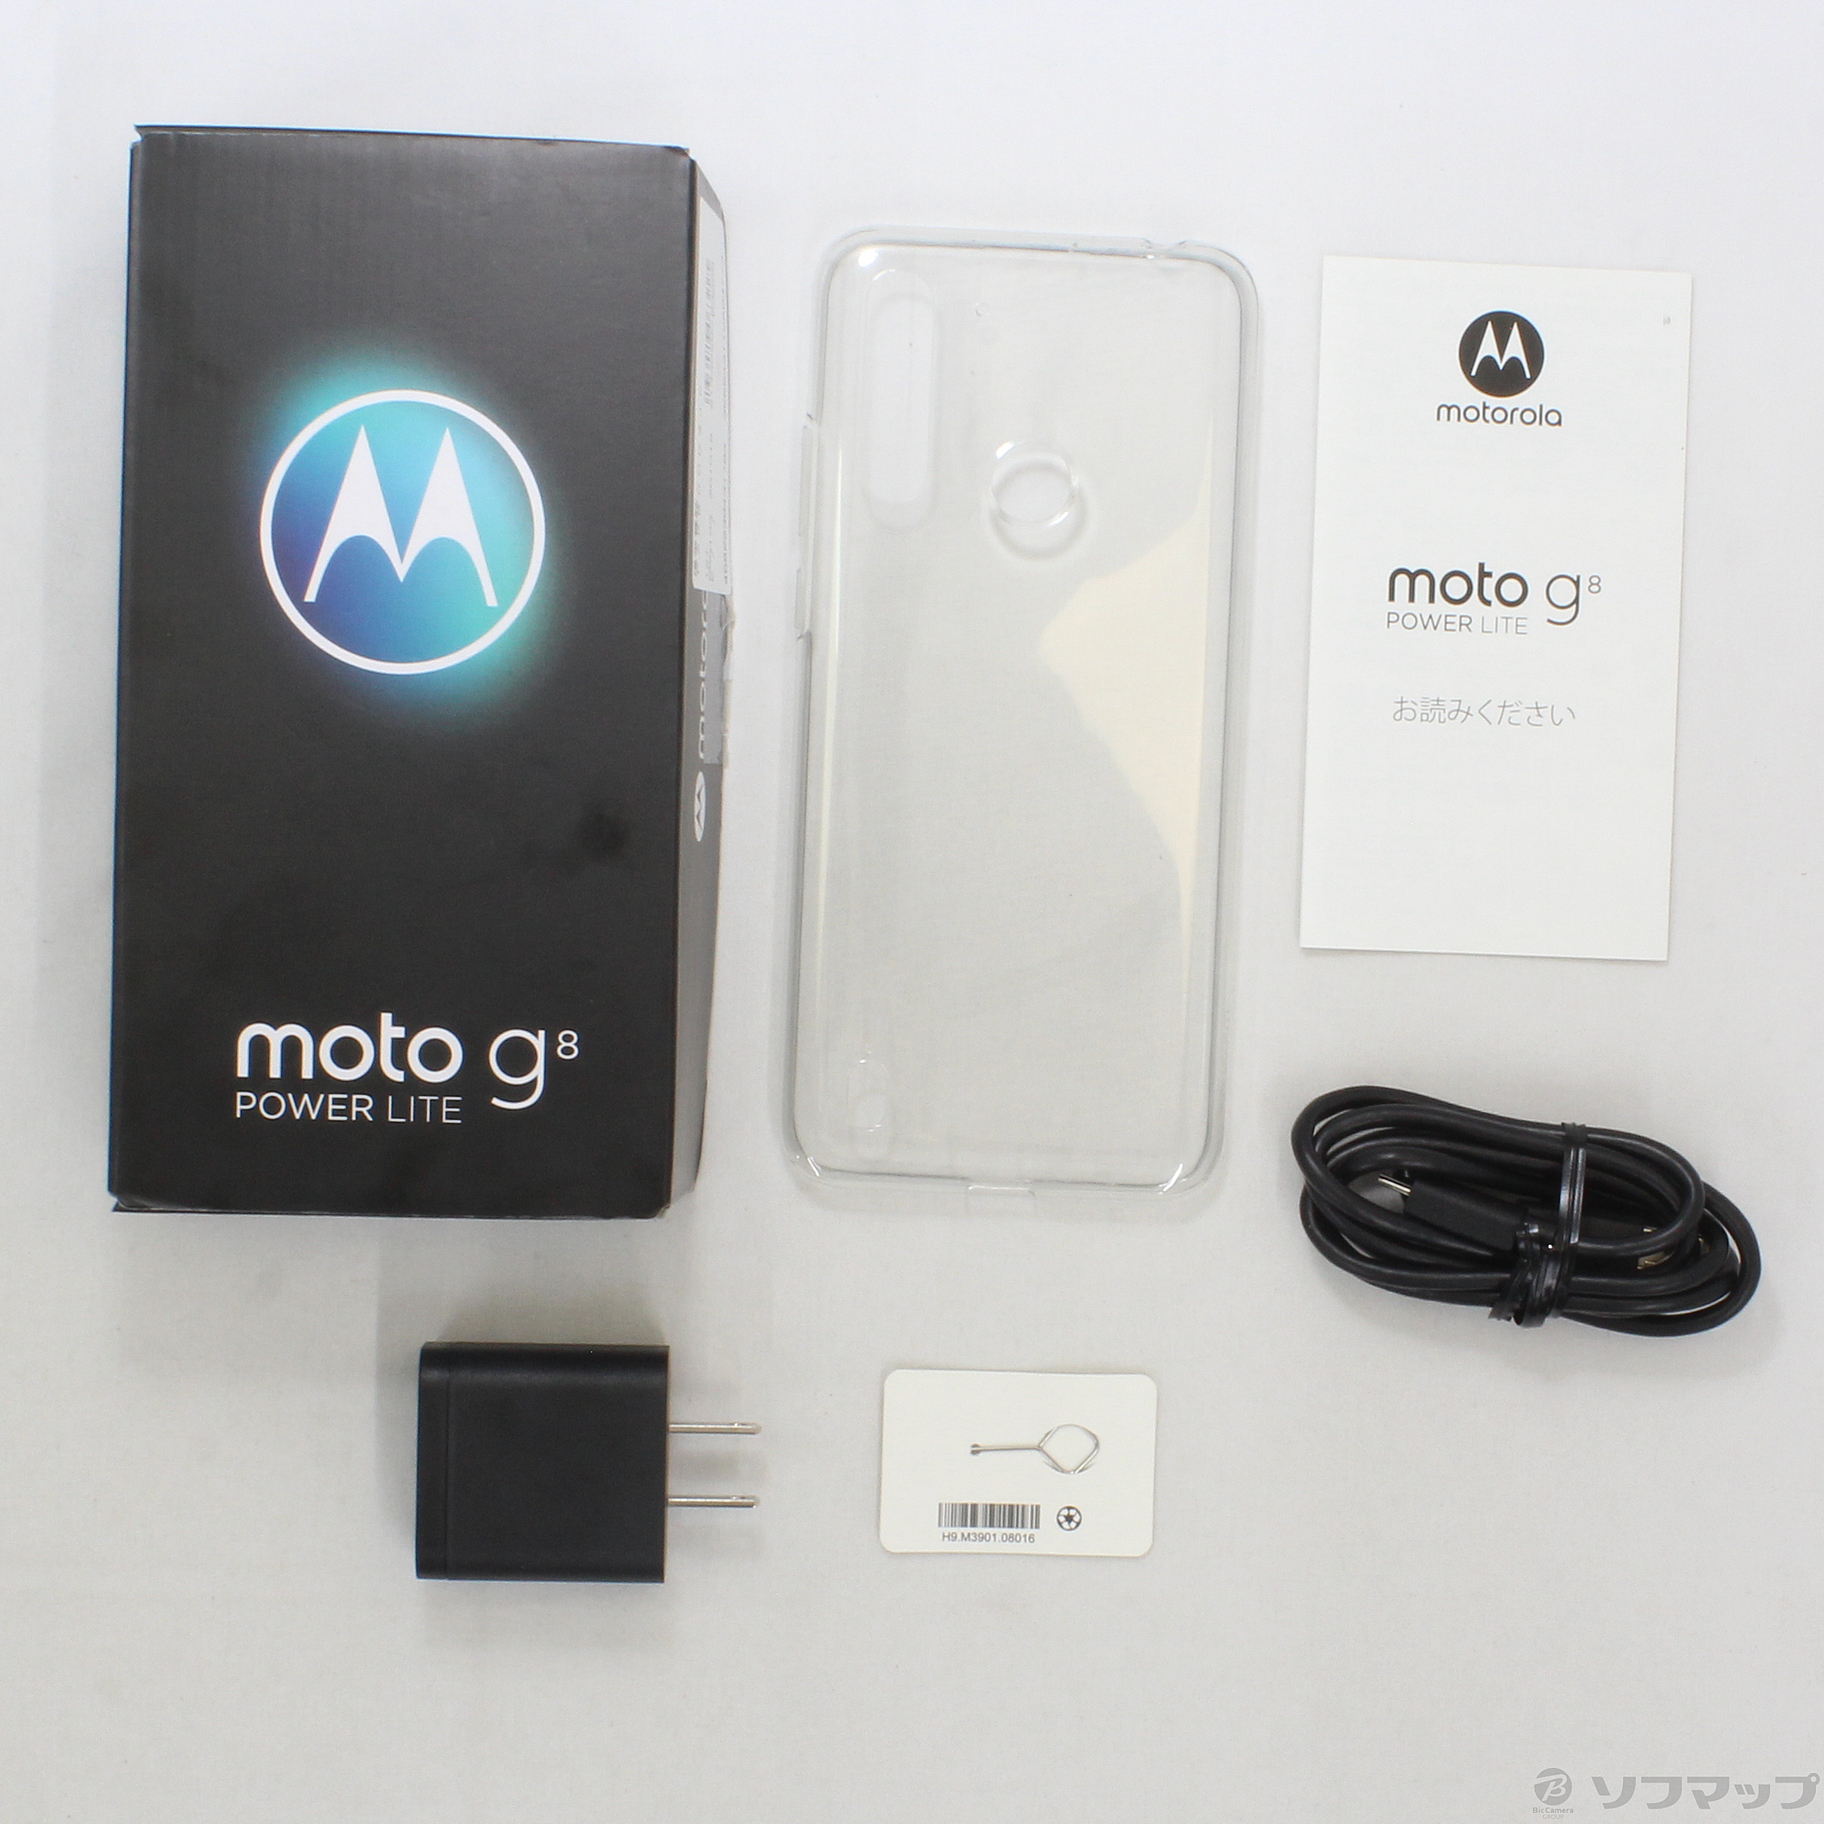 Moto G8 power lite 64GB ポーラブルー XT2055-4 SIMフリー